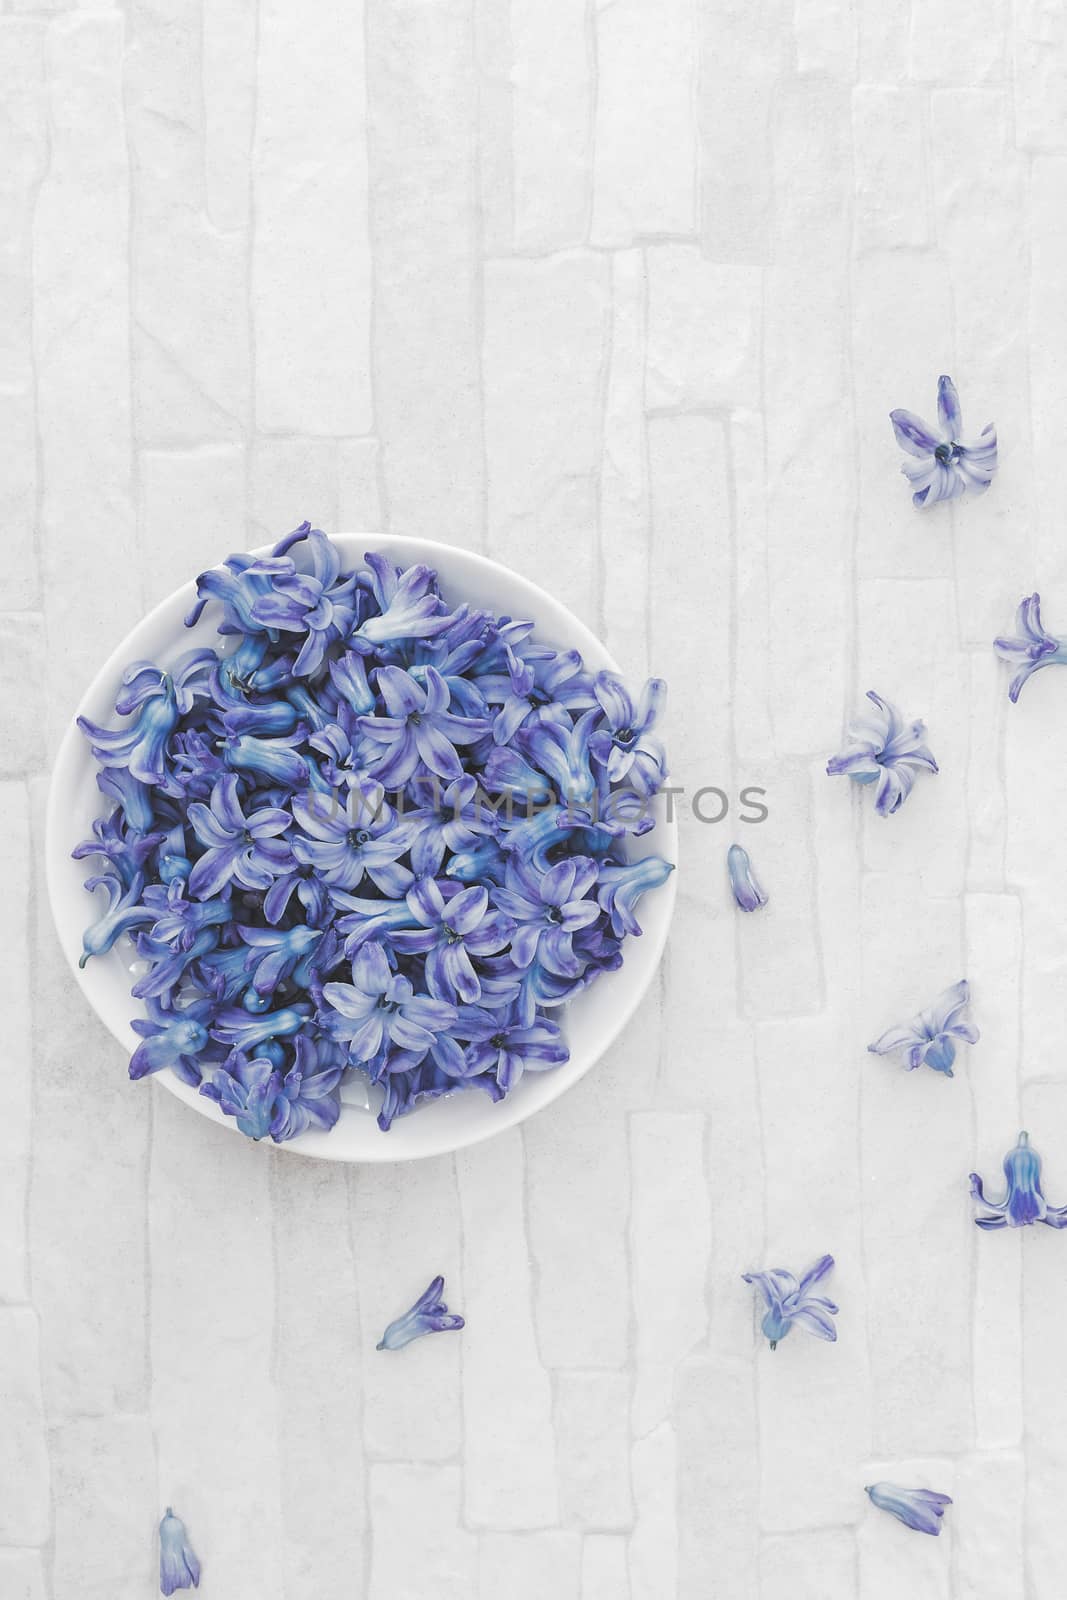 Fresh blue Hyacinth flowers by Slast20